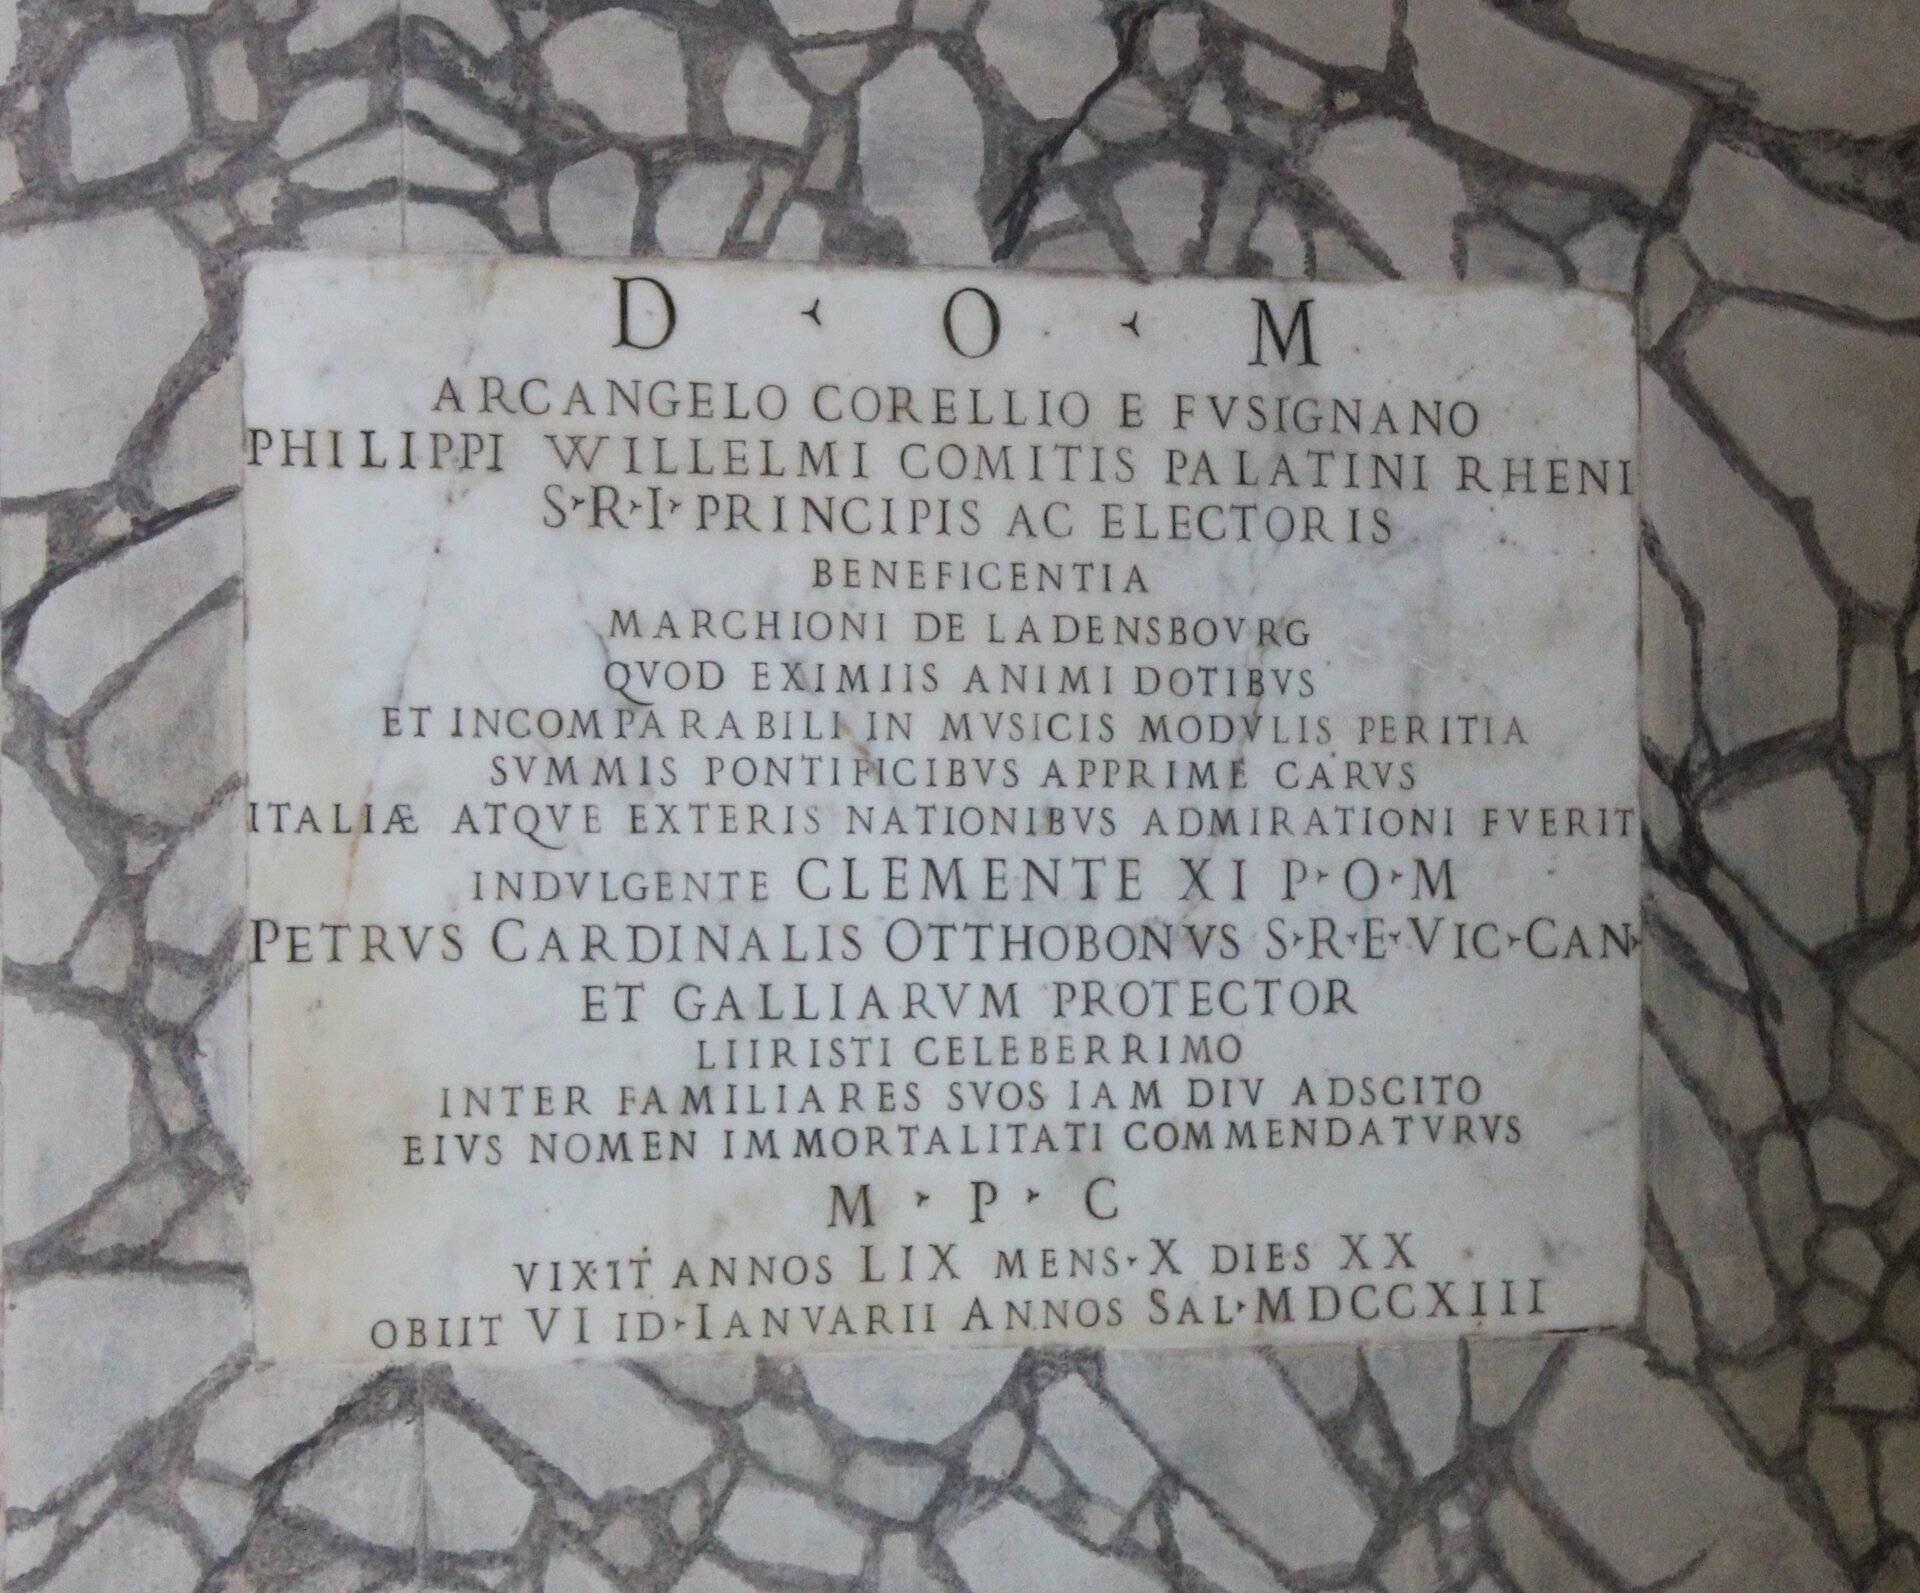 Ilustracja przedstawia: Fragment płyty nagrobnej Arcangelo Corellego znajdujący się w Panteonie, ok. 1713, Rzym, Włochy. Jest to szara kamienna tablica z wytłoczonymi napisami.